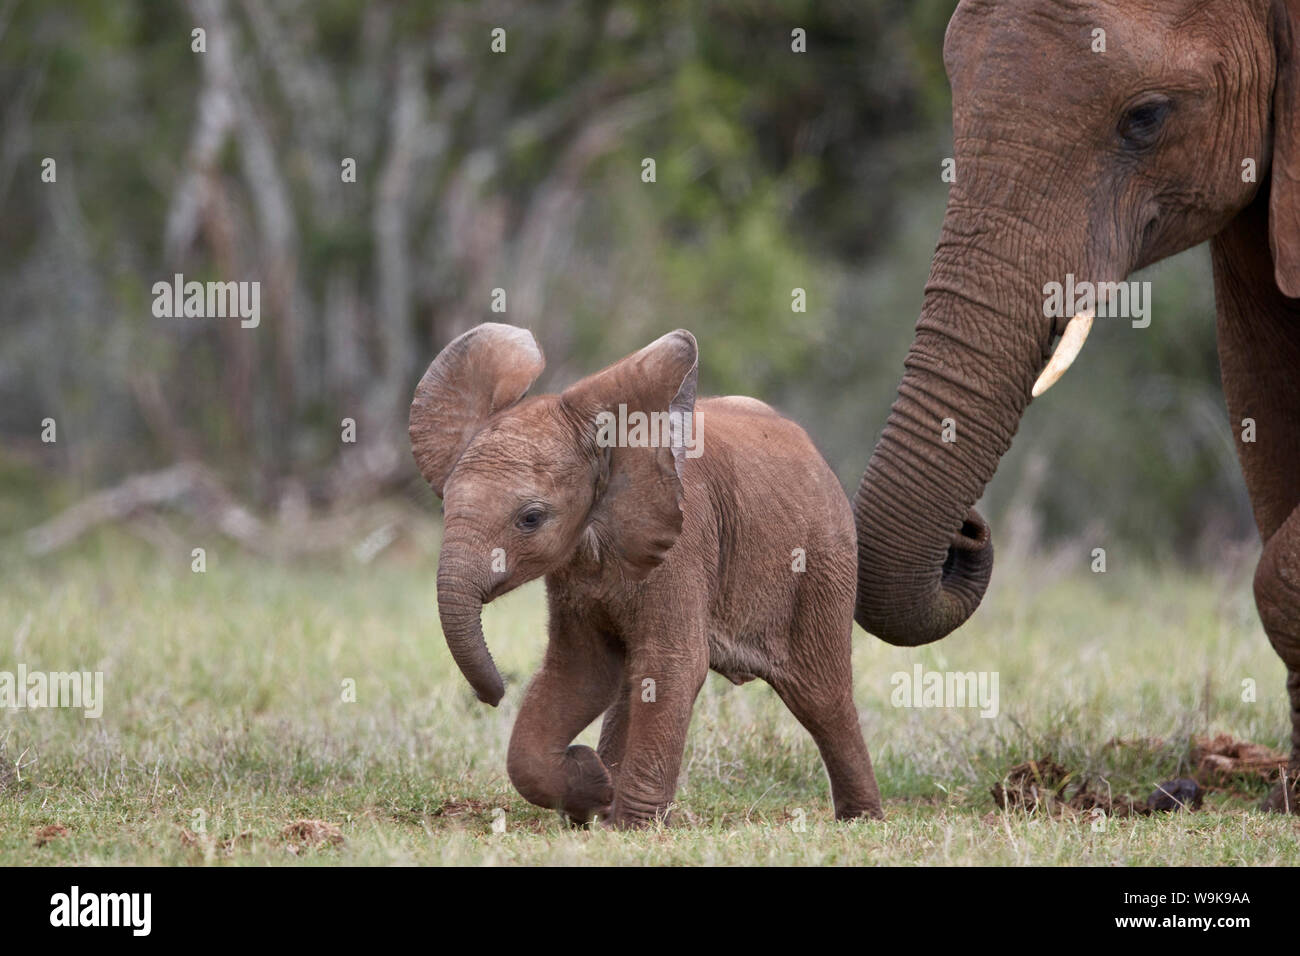 Elefante africano (Loxodonta africana) del bebé y a la madre, Parque Nacional de Elefantes Addo, Sudáfrica, África Foto de stock